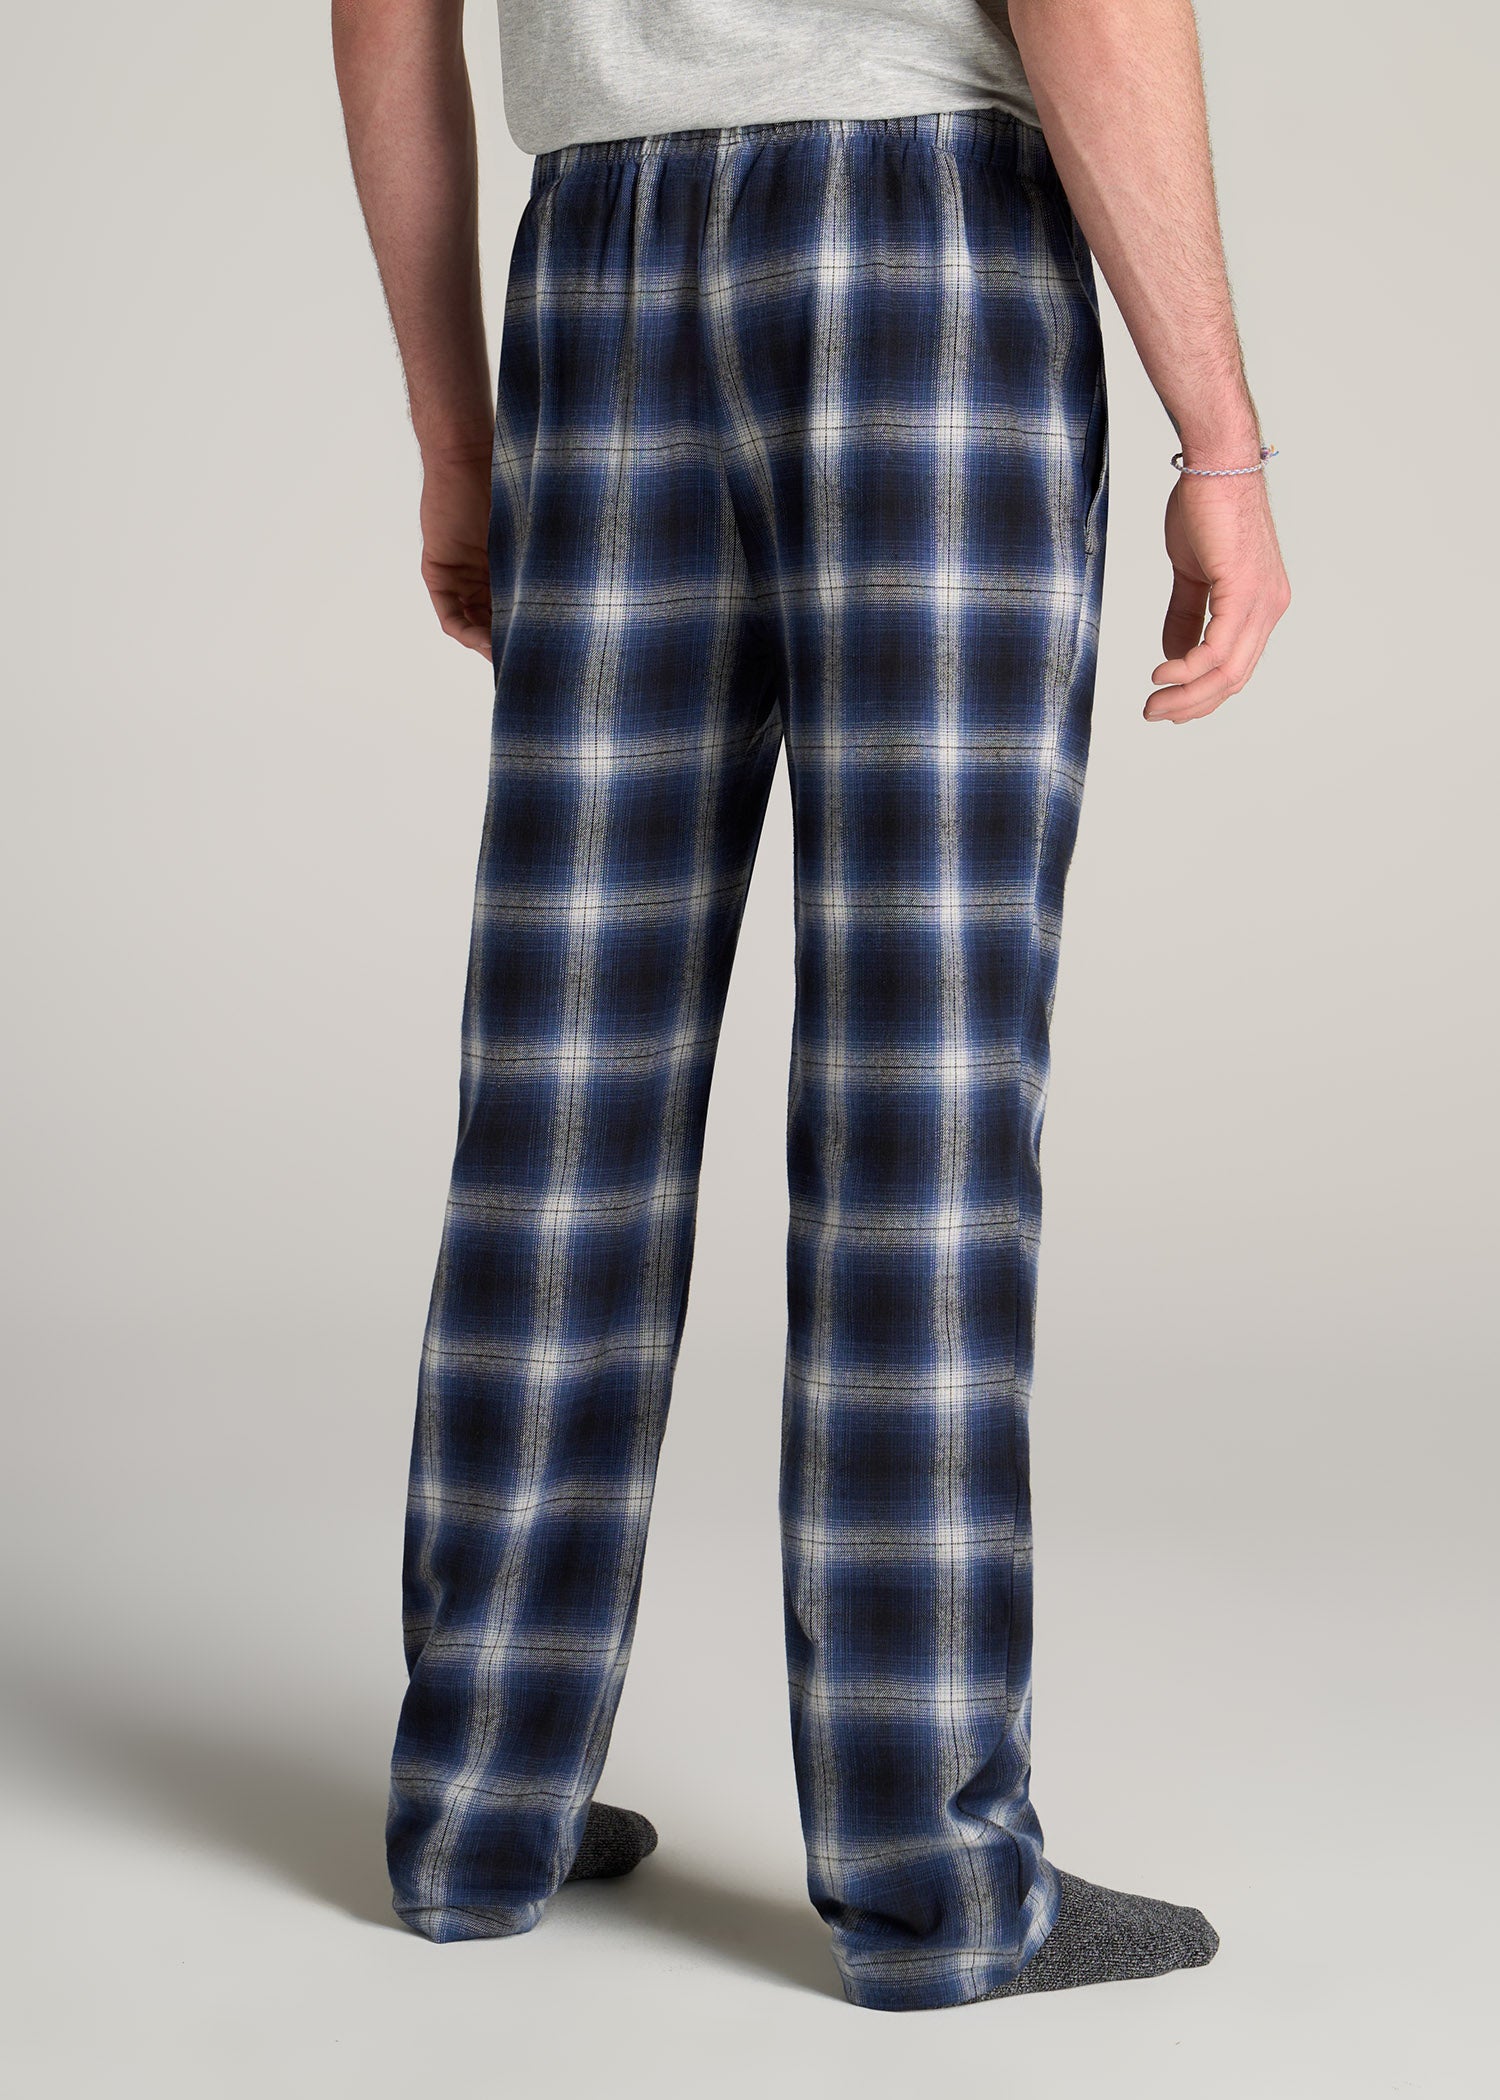 American-Tall-Men-Plaid-Pajama-Pants-Blue-Grey-Plaid-back